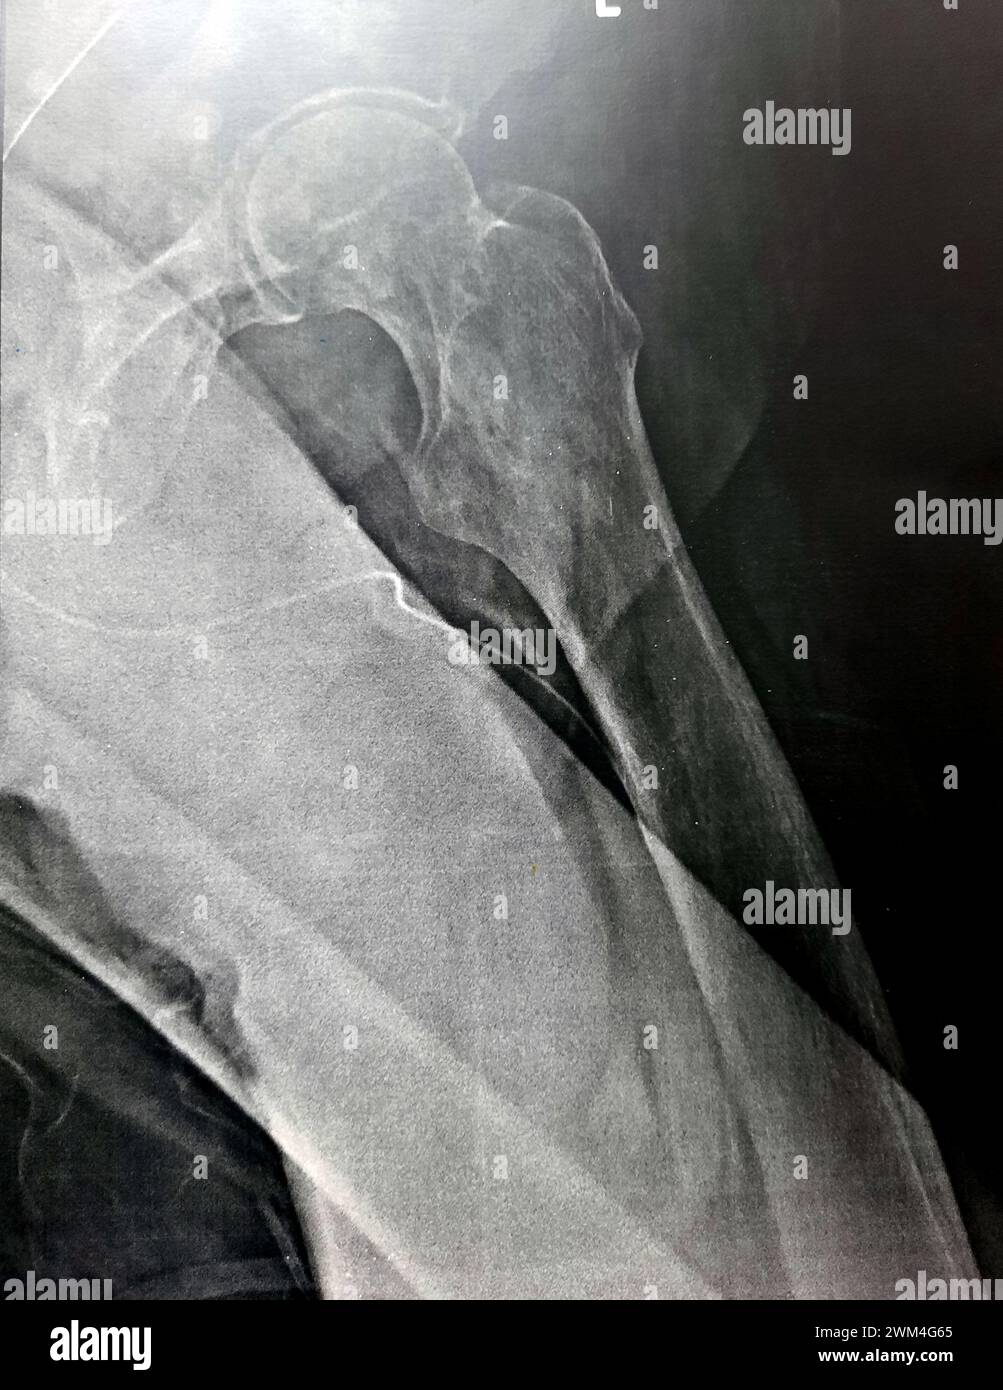 Radiografia semplice con alta probabilità di frattura subtrocanterica, trocanterica e metastasi maligne nel lato mediale dell'albero femorale sottostante Foto Stock